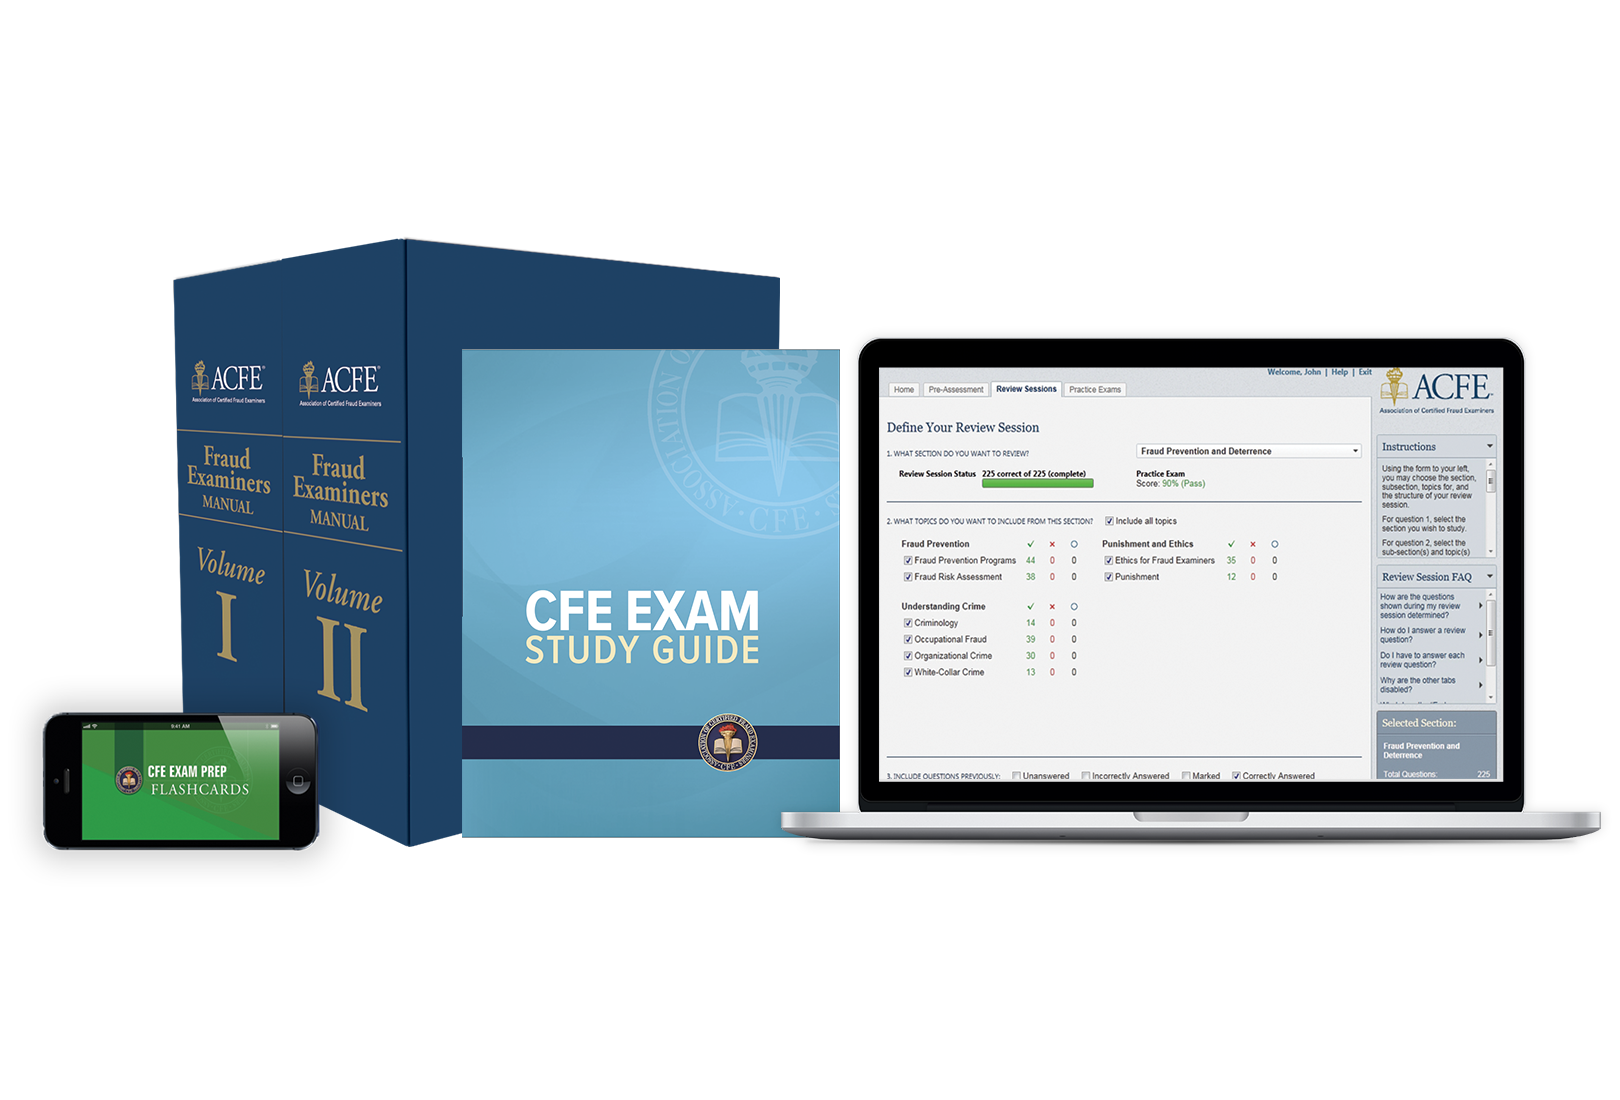 CFE Exam Prep Toolkit Image